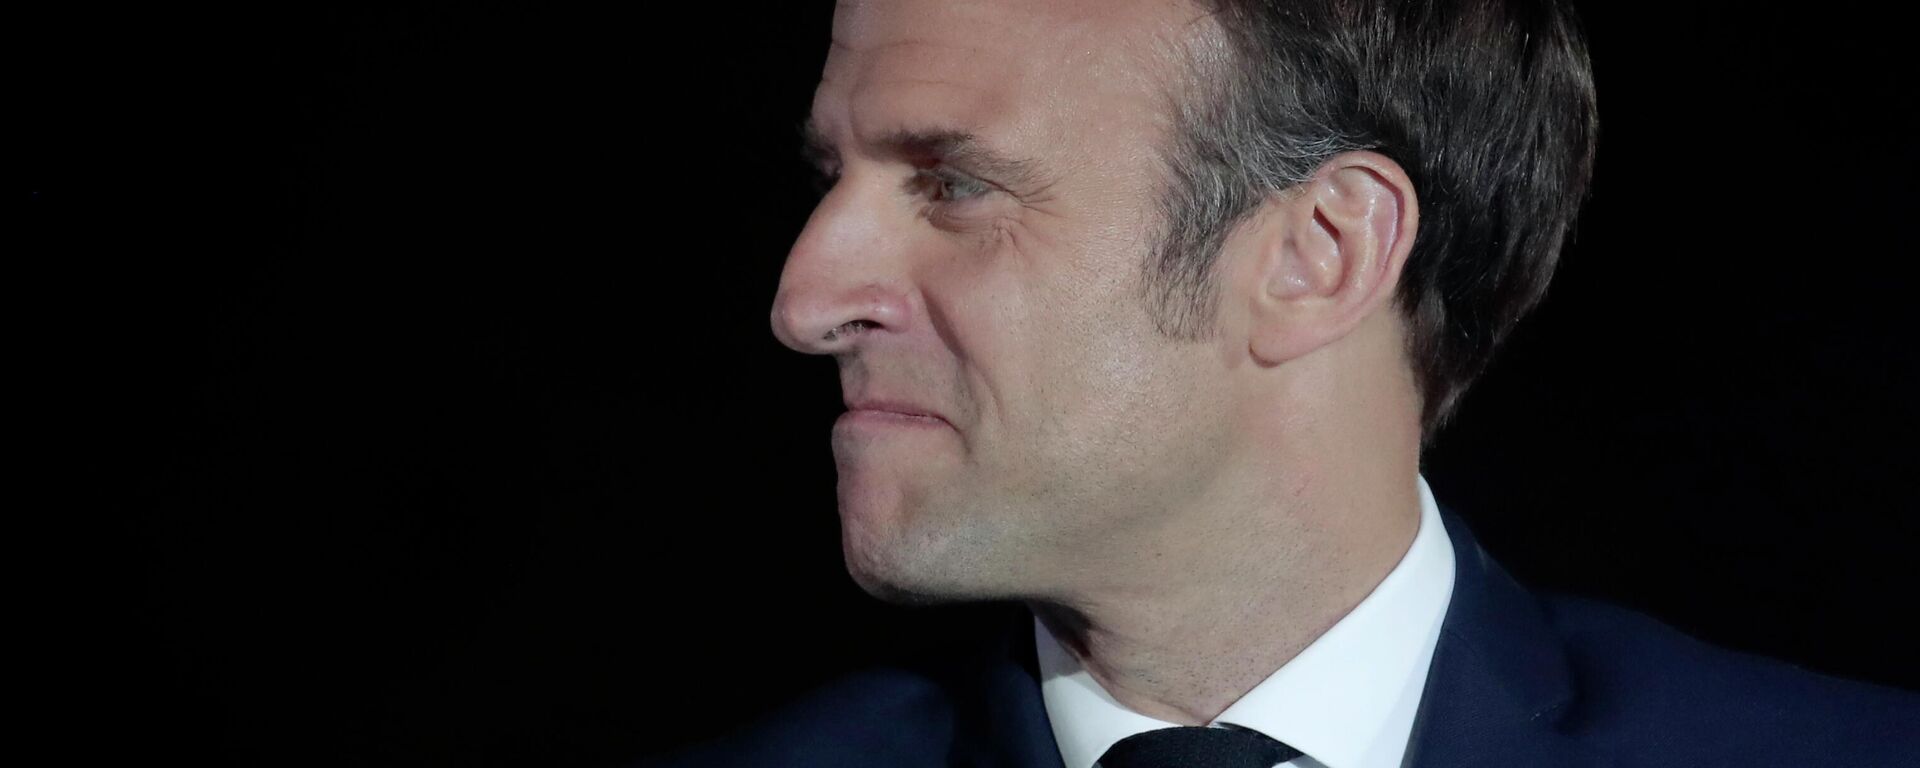 La reelección de Emmanuel Macron como el presidente de Francia - Sputnik Mundo, 1920, 31.05.2022